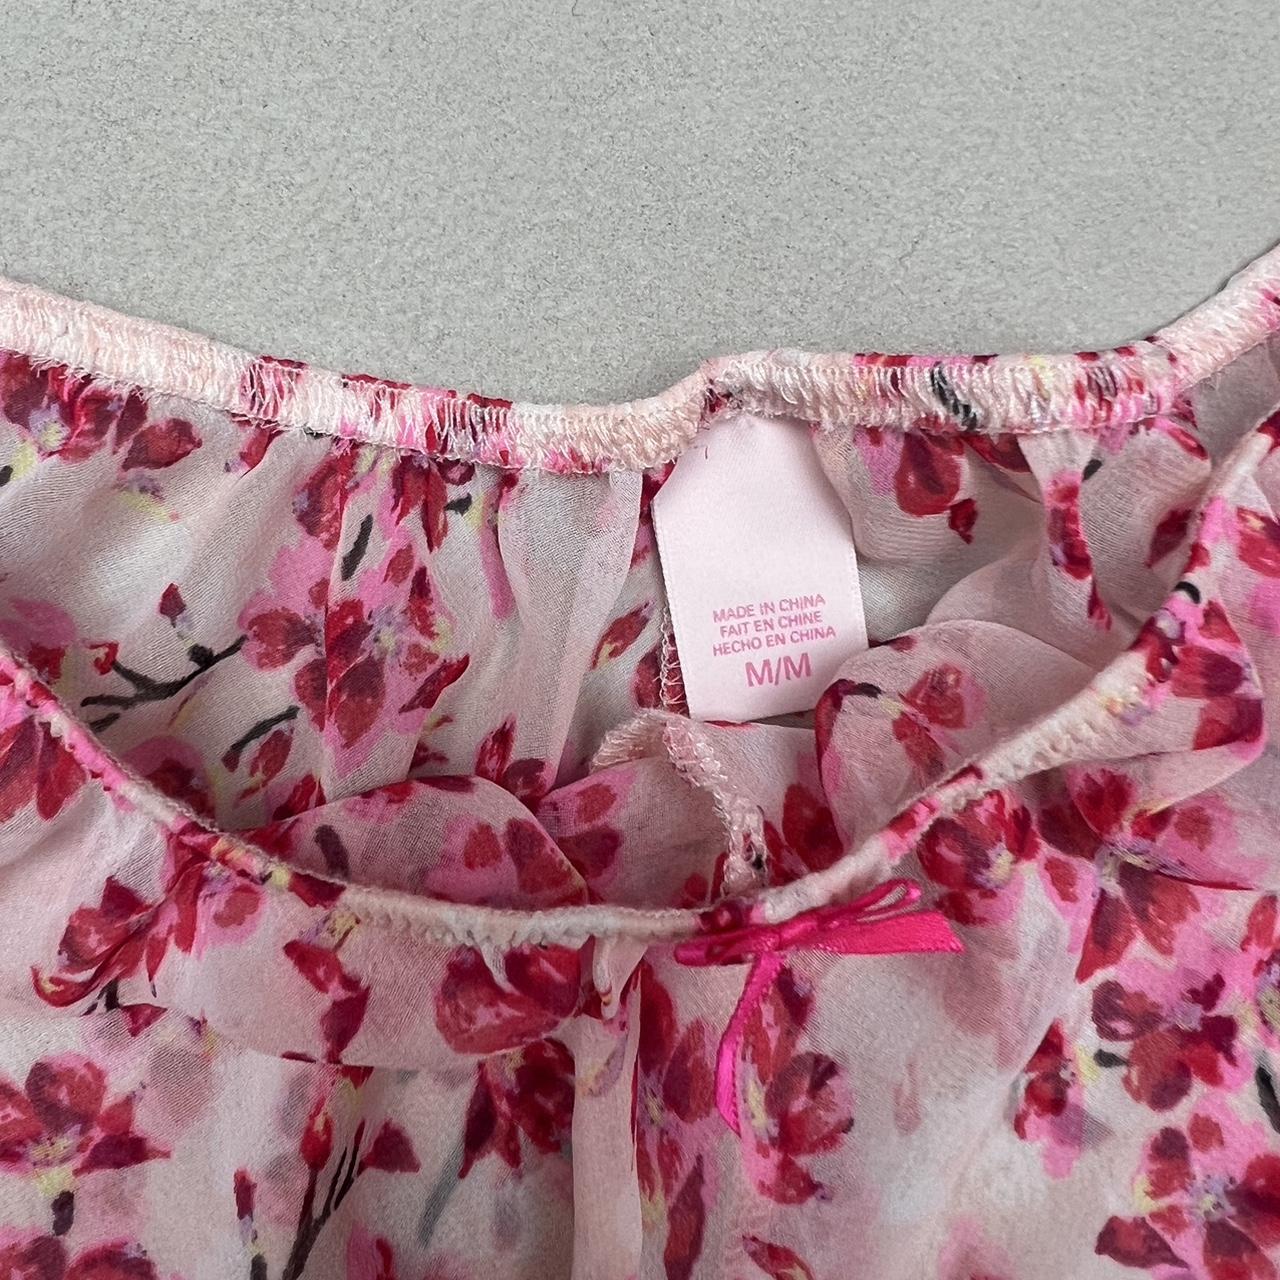 Victoria's Secret Women's Pink Nightwear | Depop